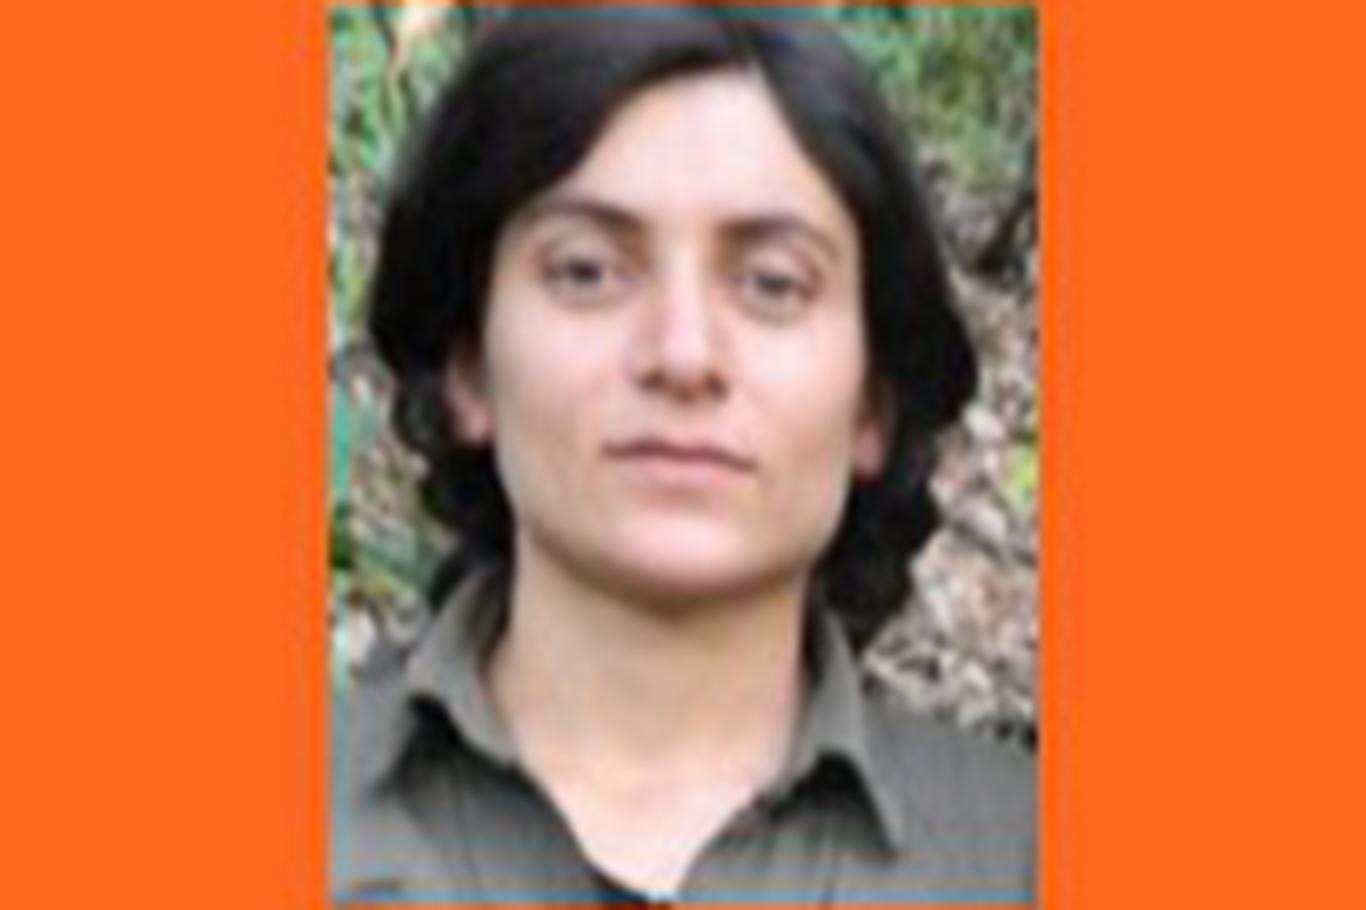 Turuncu kategorideki PKK'li öldürüldü